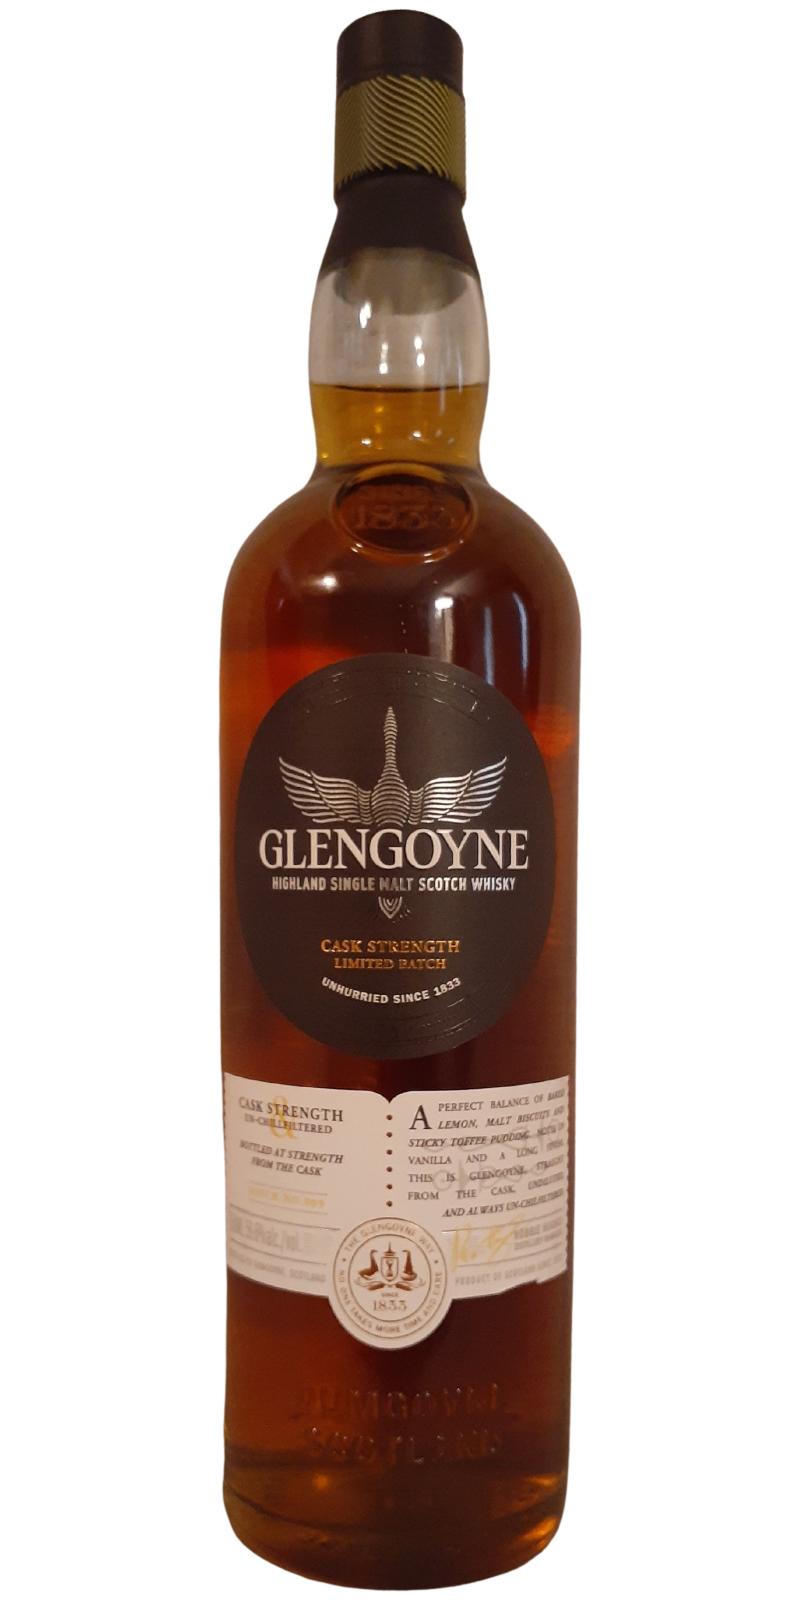 Glengoyne Cask Strength 1st fill Oloroso refill Cask Bourbon Barrel 59.6% 750ml